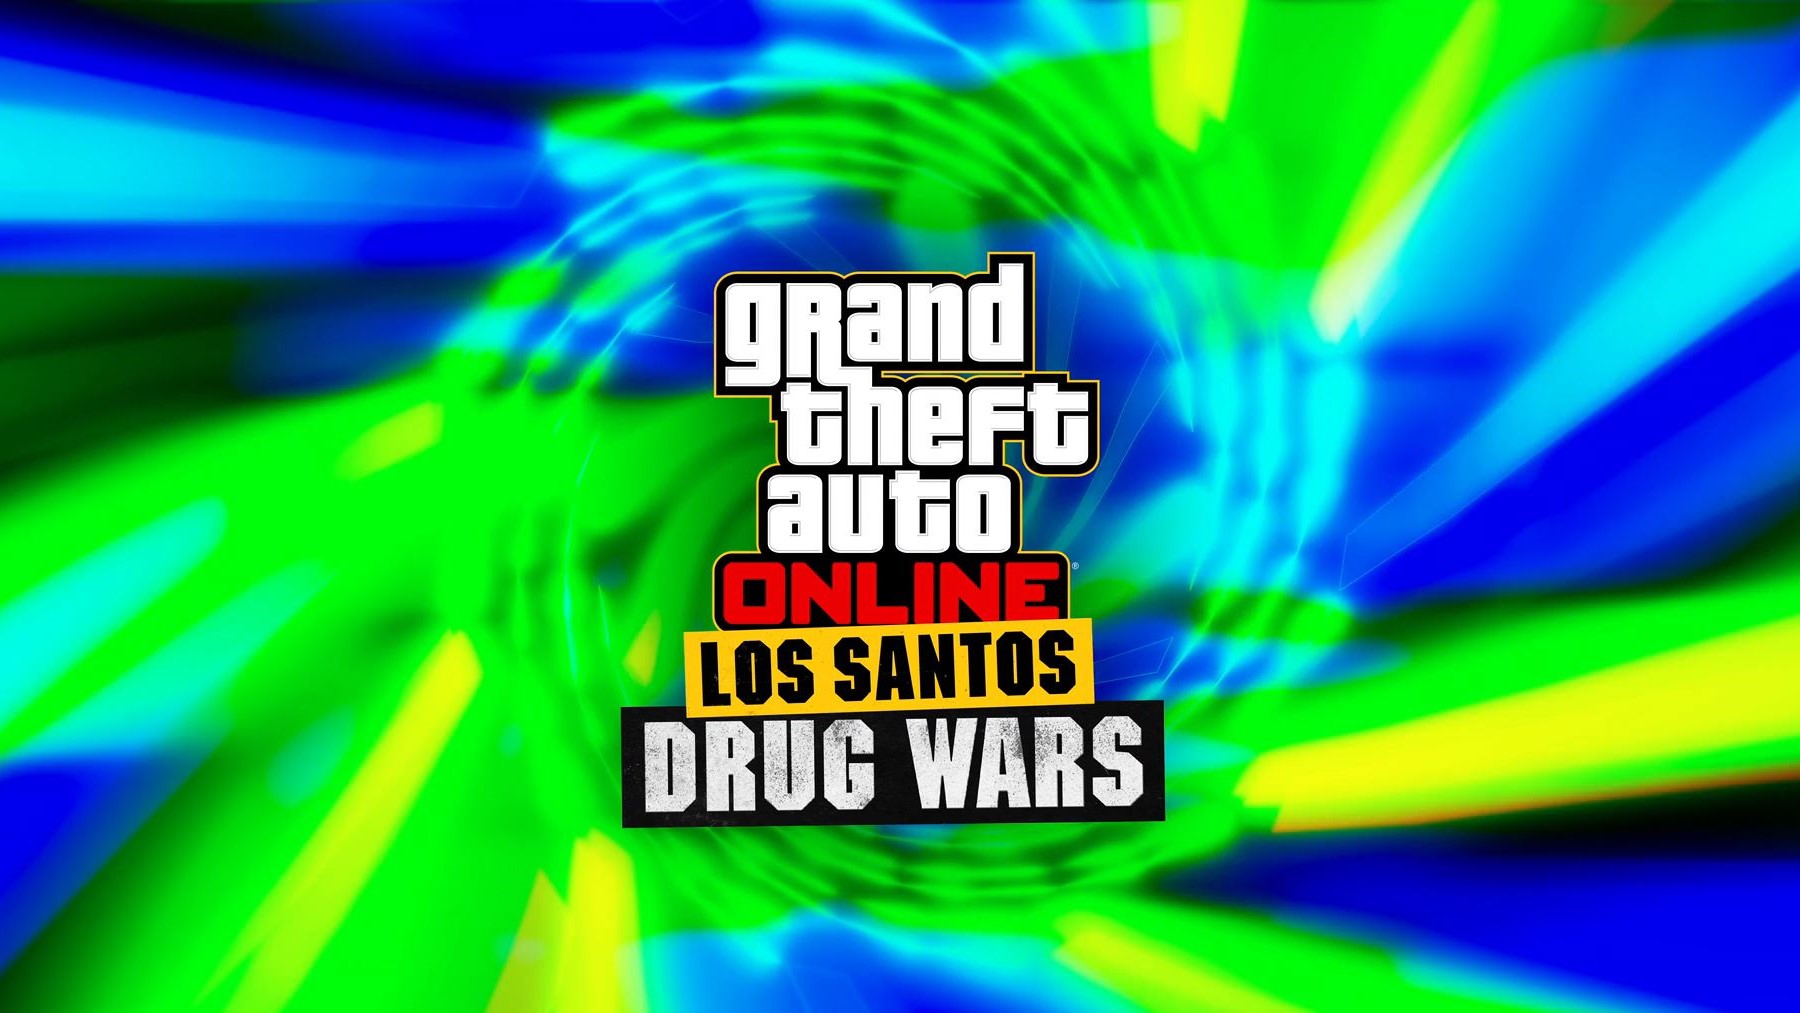 GTA Online Los Santos Drug Wars Trailer released shows off the December